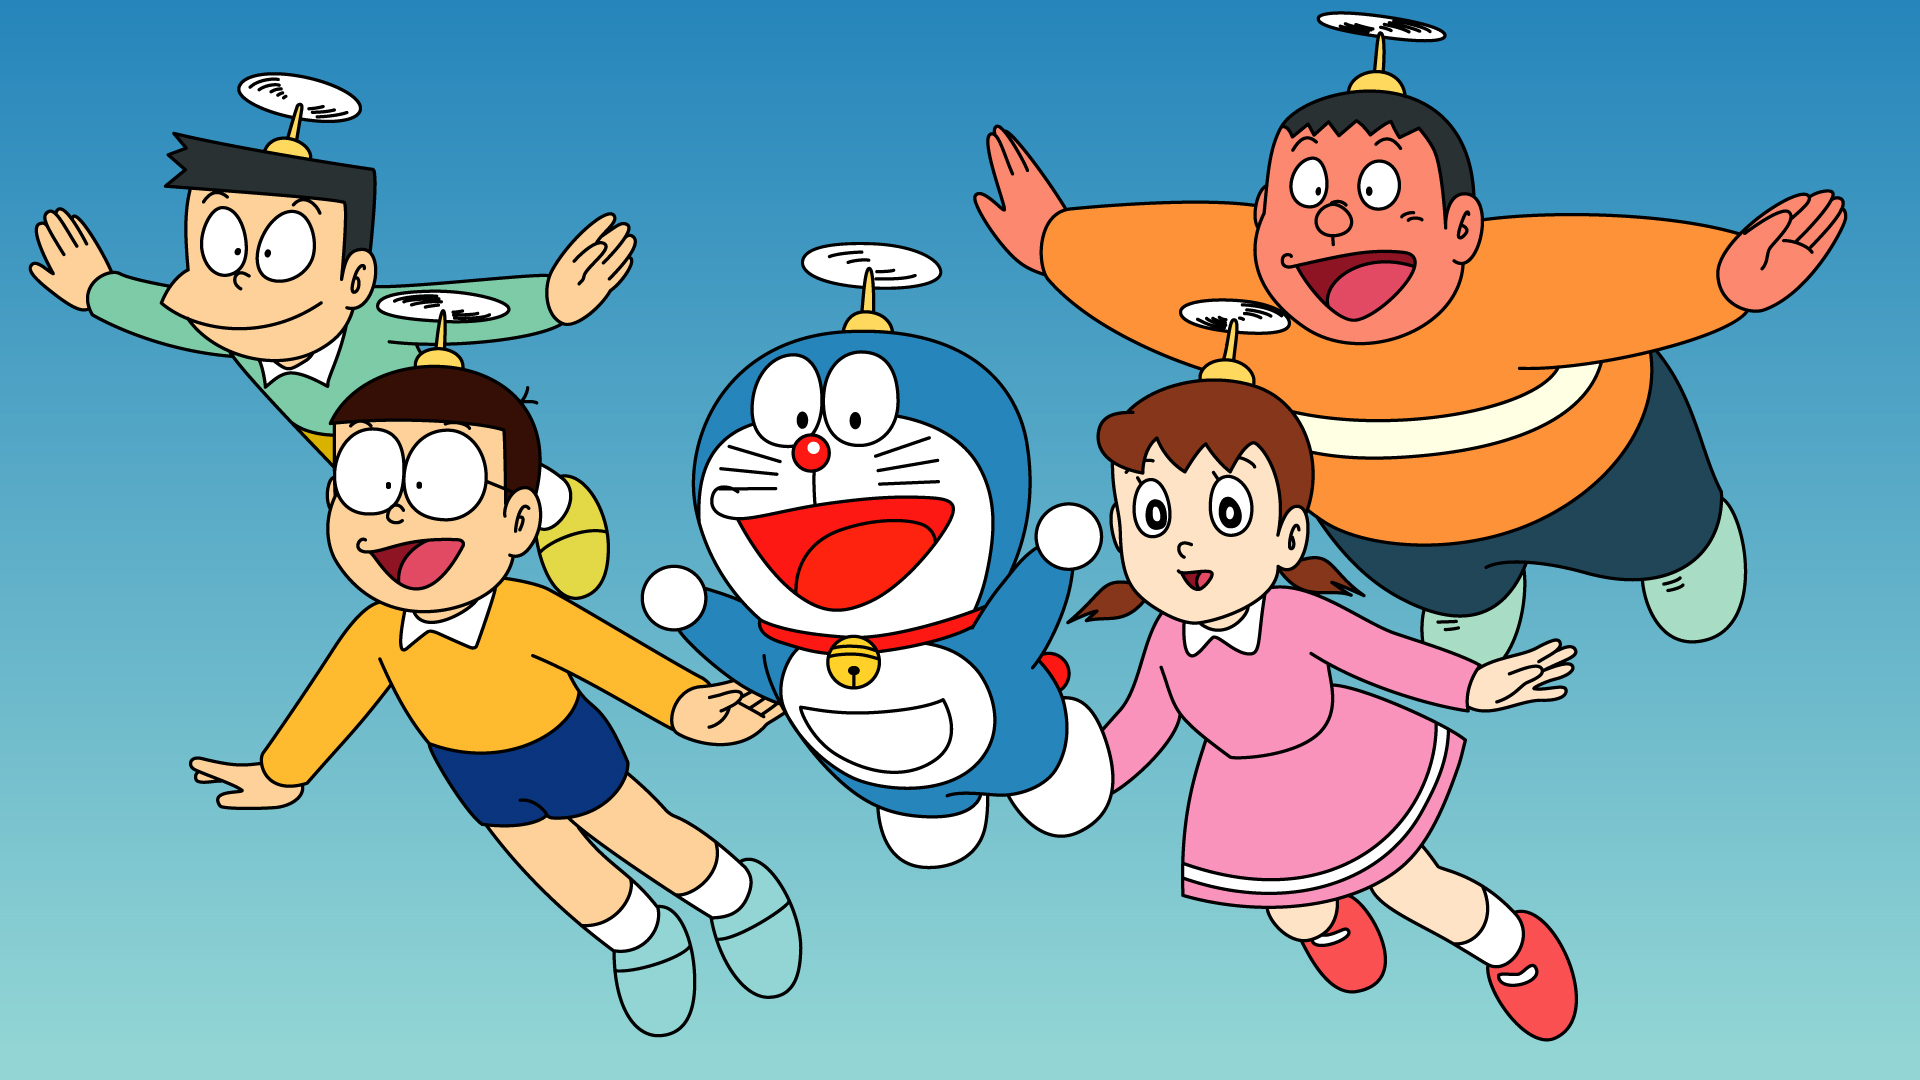 Doraemon Desktop Wallpaper: Chào mừng bạn đến với bộ sưu tập hình nền Doraemon đáng yêu nhất. Hãy chọn bất kỳ bức ảnh nào để tạo nên một không gian làm việc và giải trí đáng yêu, dễ chịu hơn. Doraemon với chiếc túi thần kỳ của mình sẽ mang đến cho bạn những phút giây thư giãn đáng nhớ.